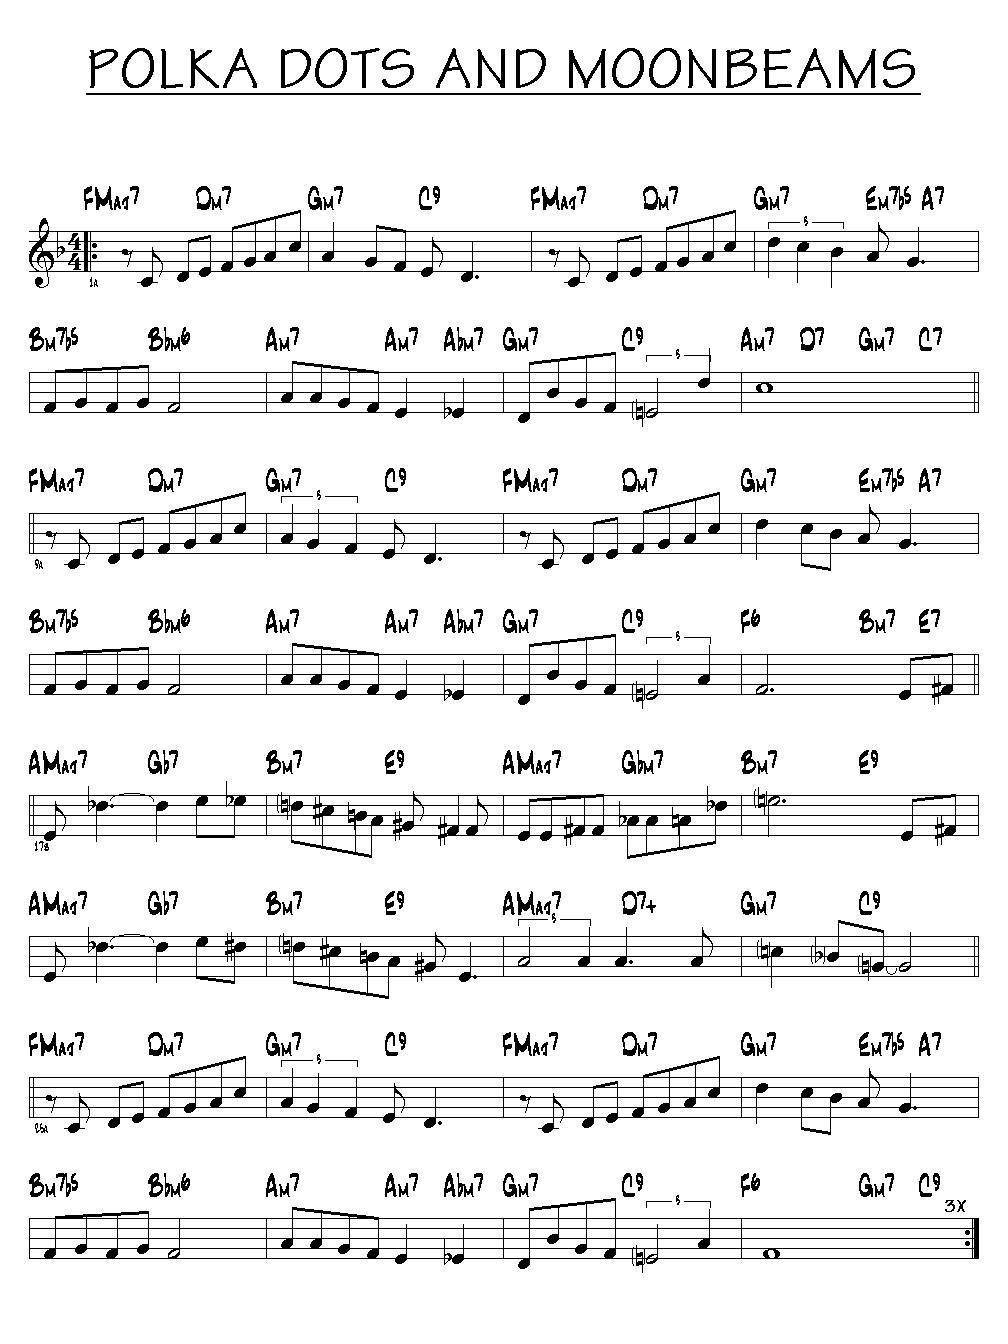 Partition Polka dots and moonbeams piano guitare